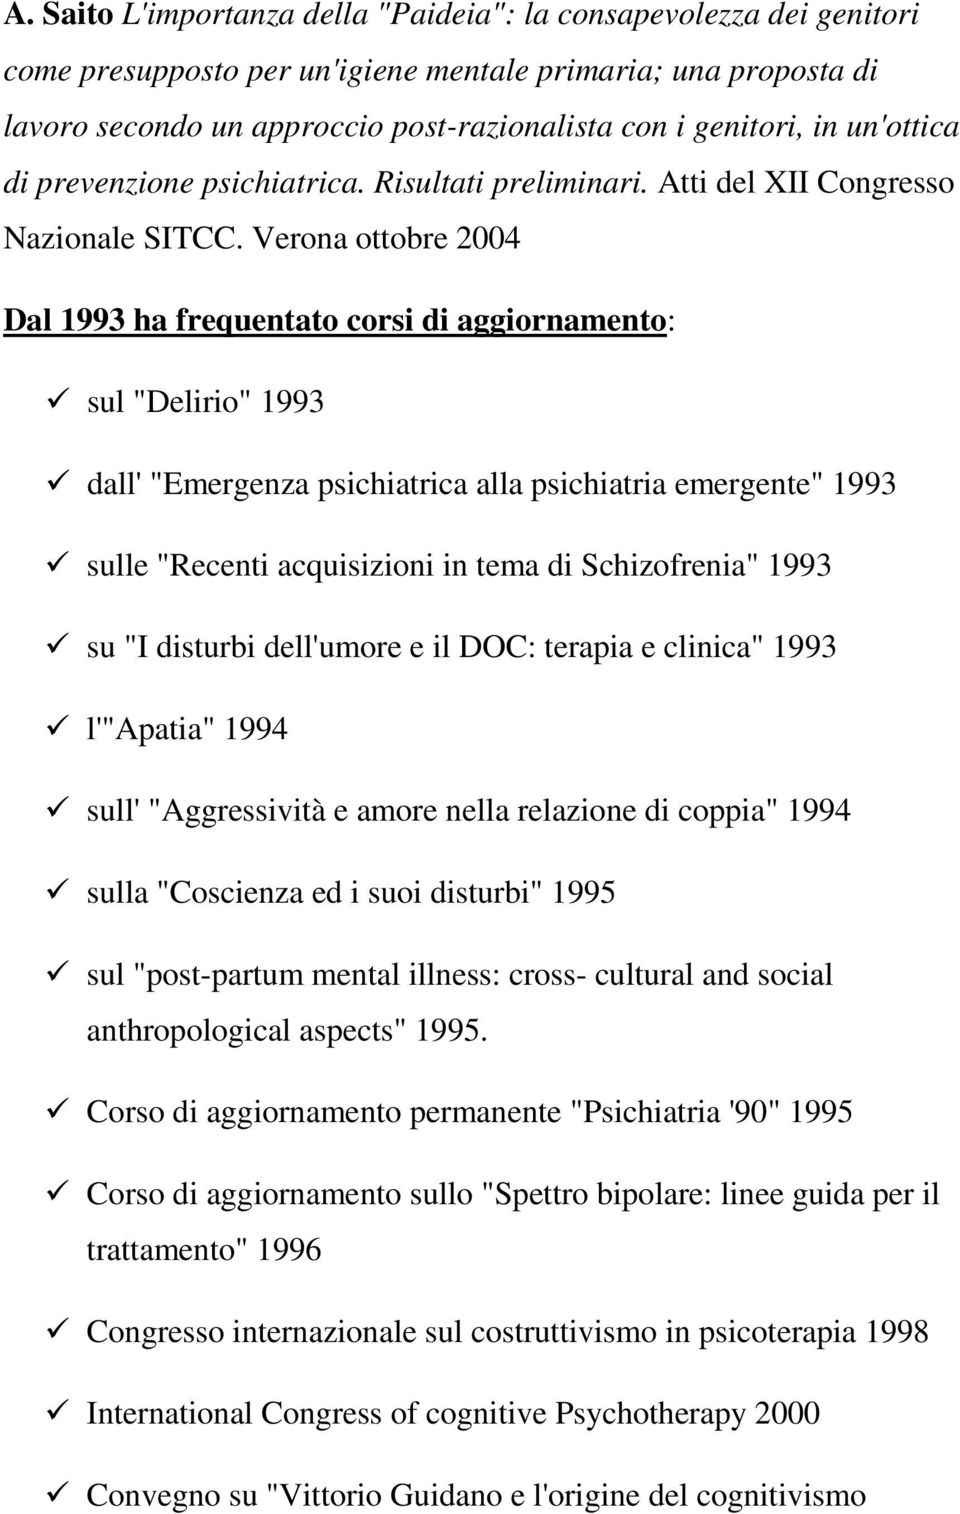 Verona ottobre 2004 Dal 1993 ha frequentato corsi di aggiornamento: sul "Delirio" 1993 dall' "Emergenza psichiatrica alla psichiatria emergente" 1993 sulle "Recenti acquisizioni in tema di